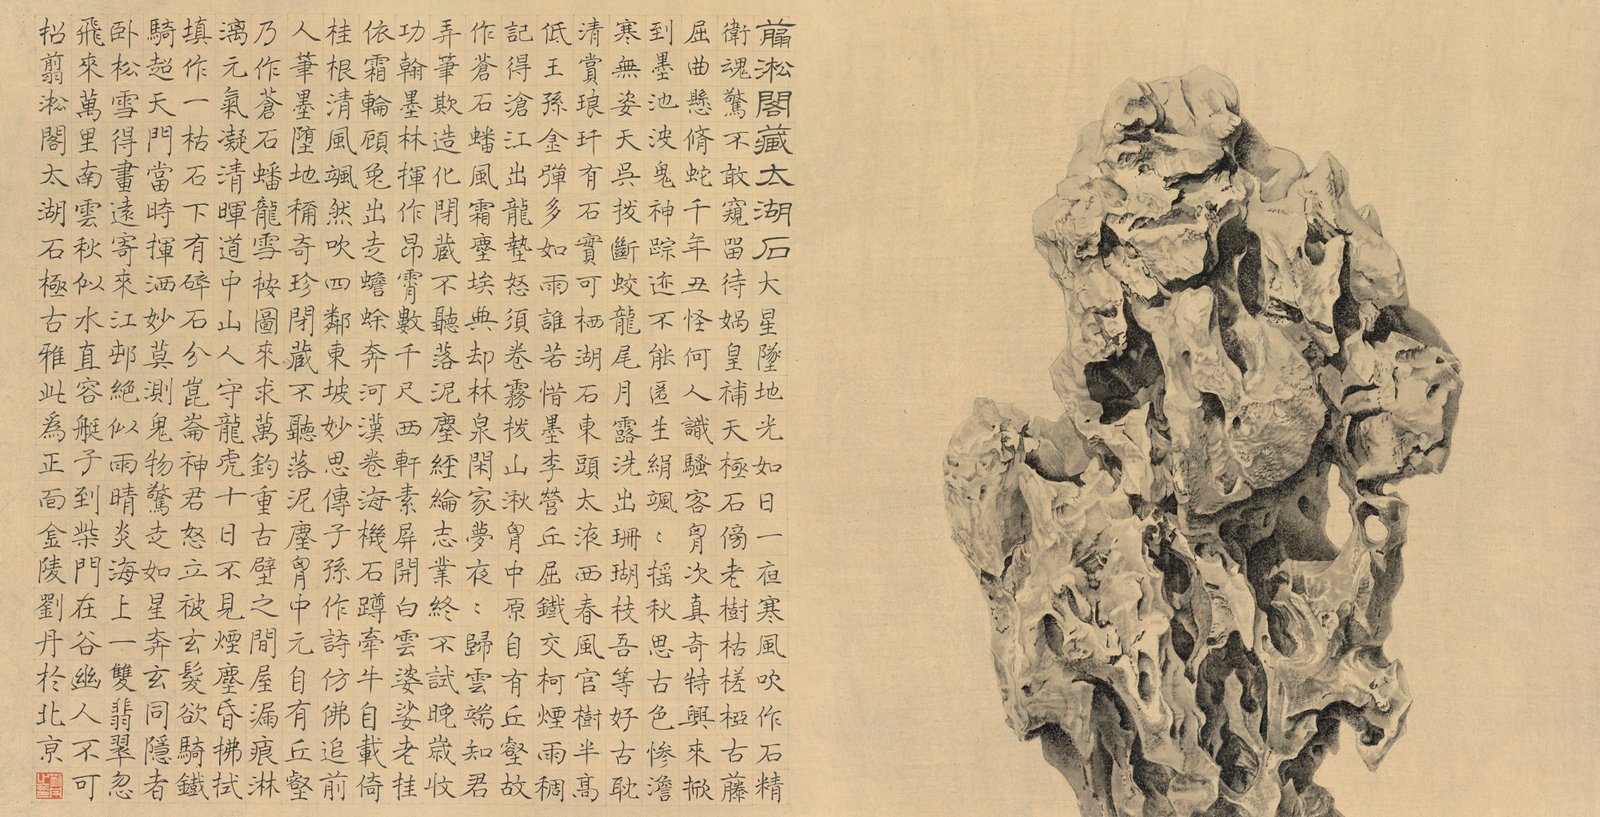 Rocher d'un érudit, encre sur papier, 2013, Liu Dan (1953-)